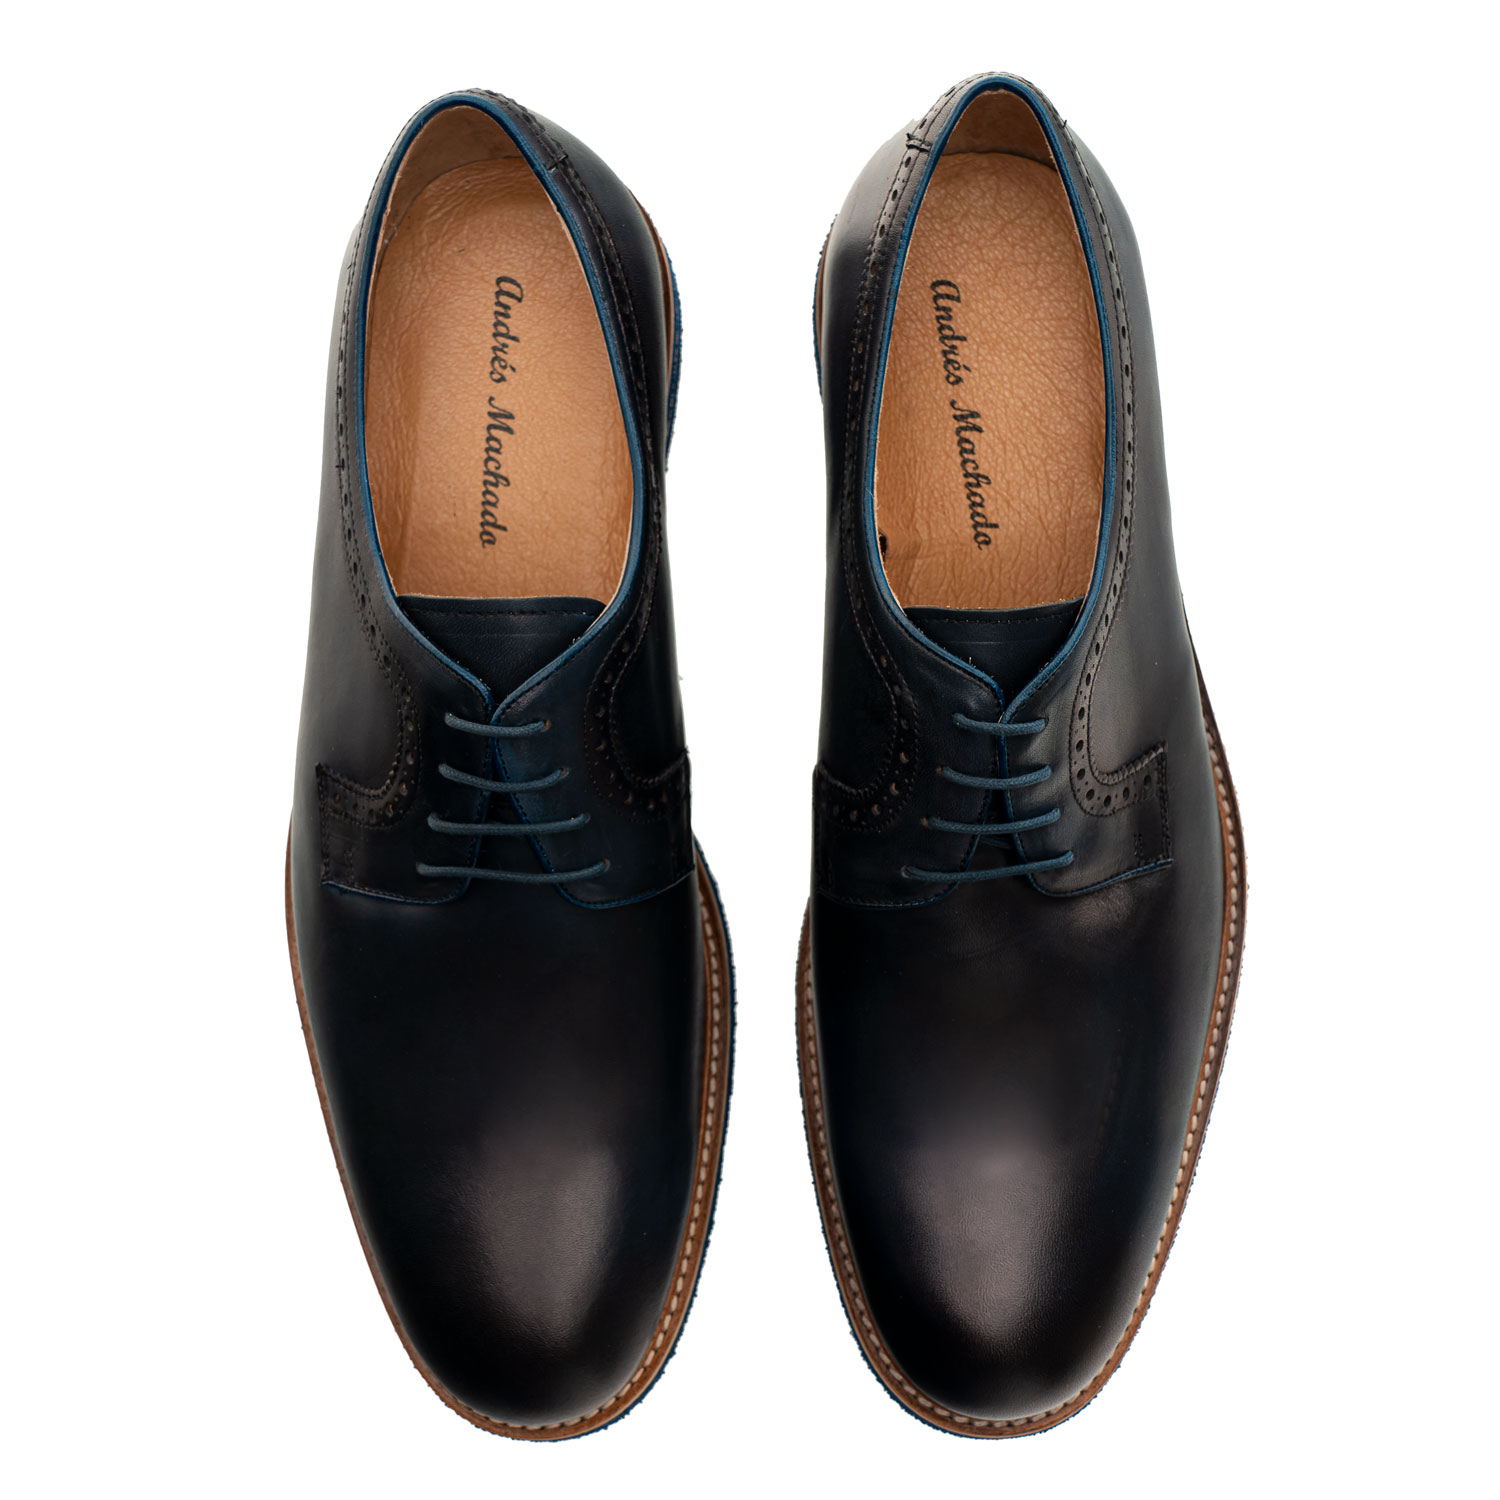 Zapato estilo Oxford en Cuero de color Marino 